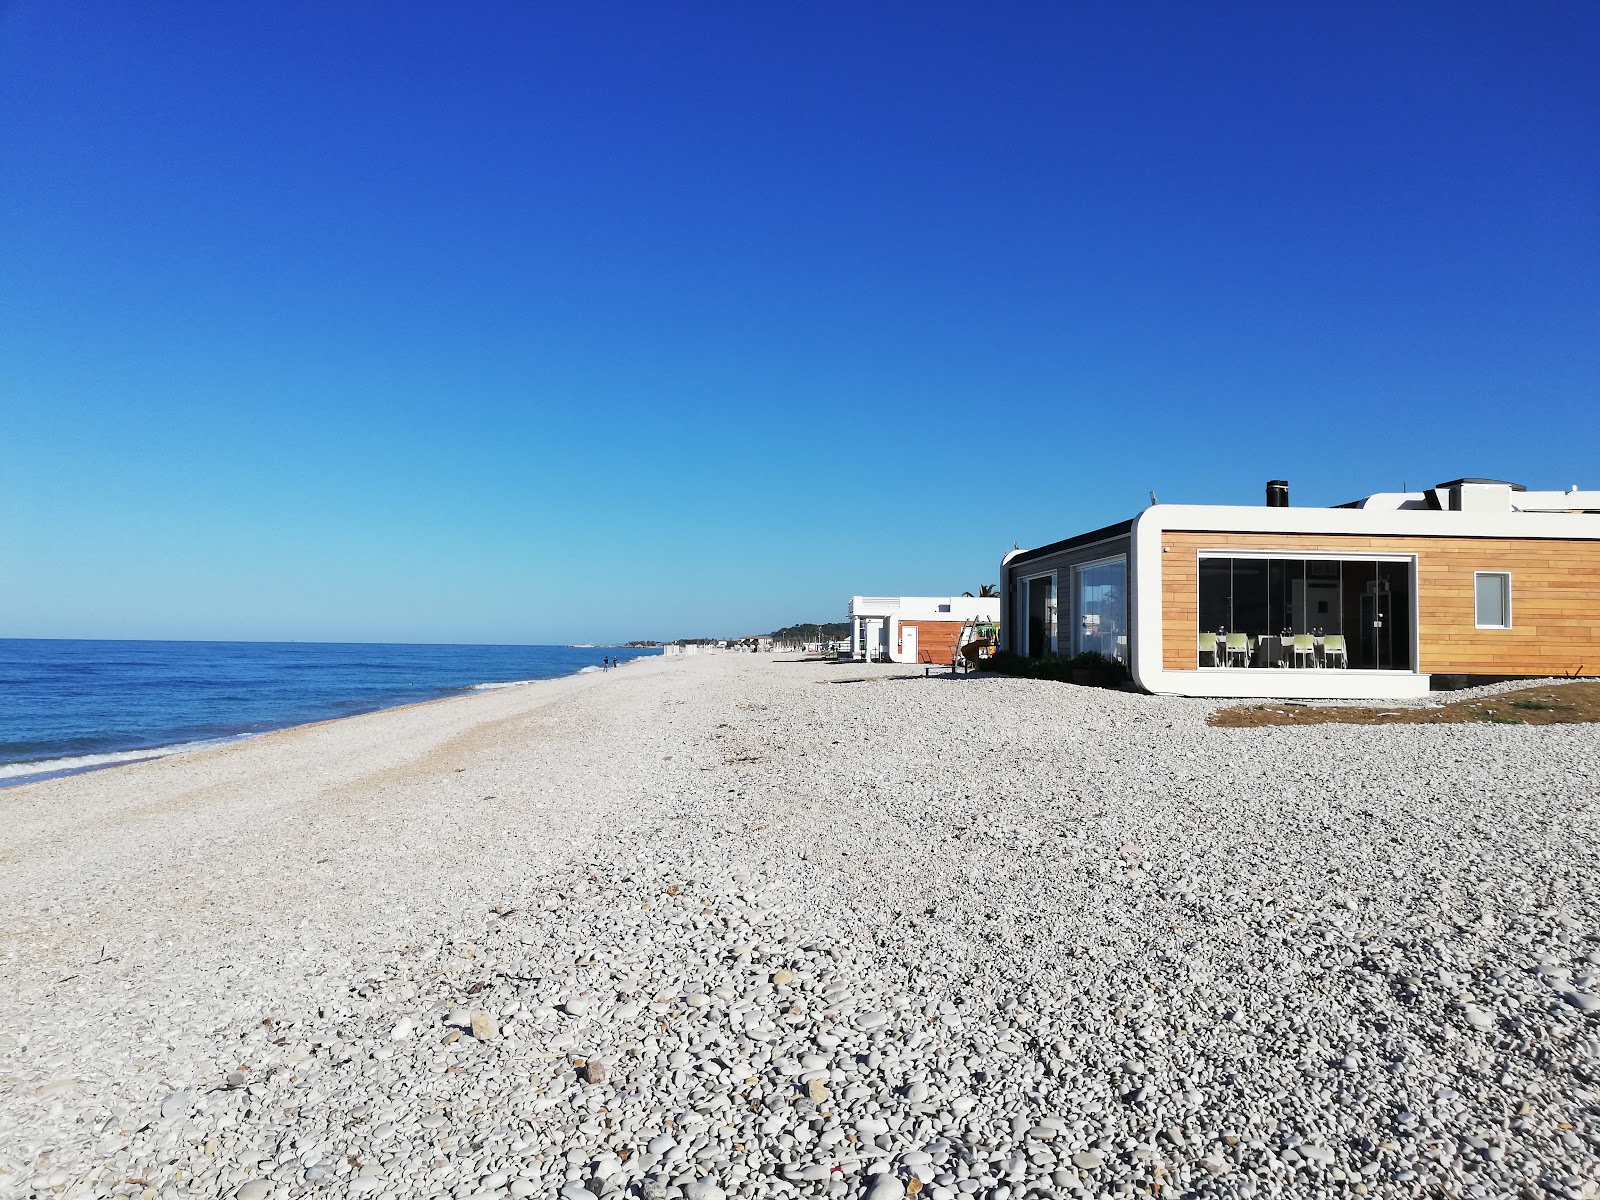 Foto de Spiaggia di Fossacesia Marina - bom local amigável para animais de estimação para férias